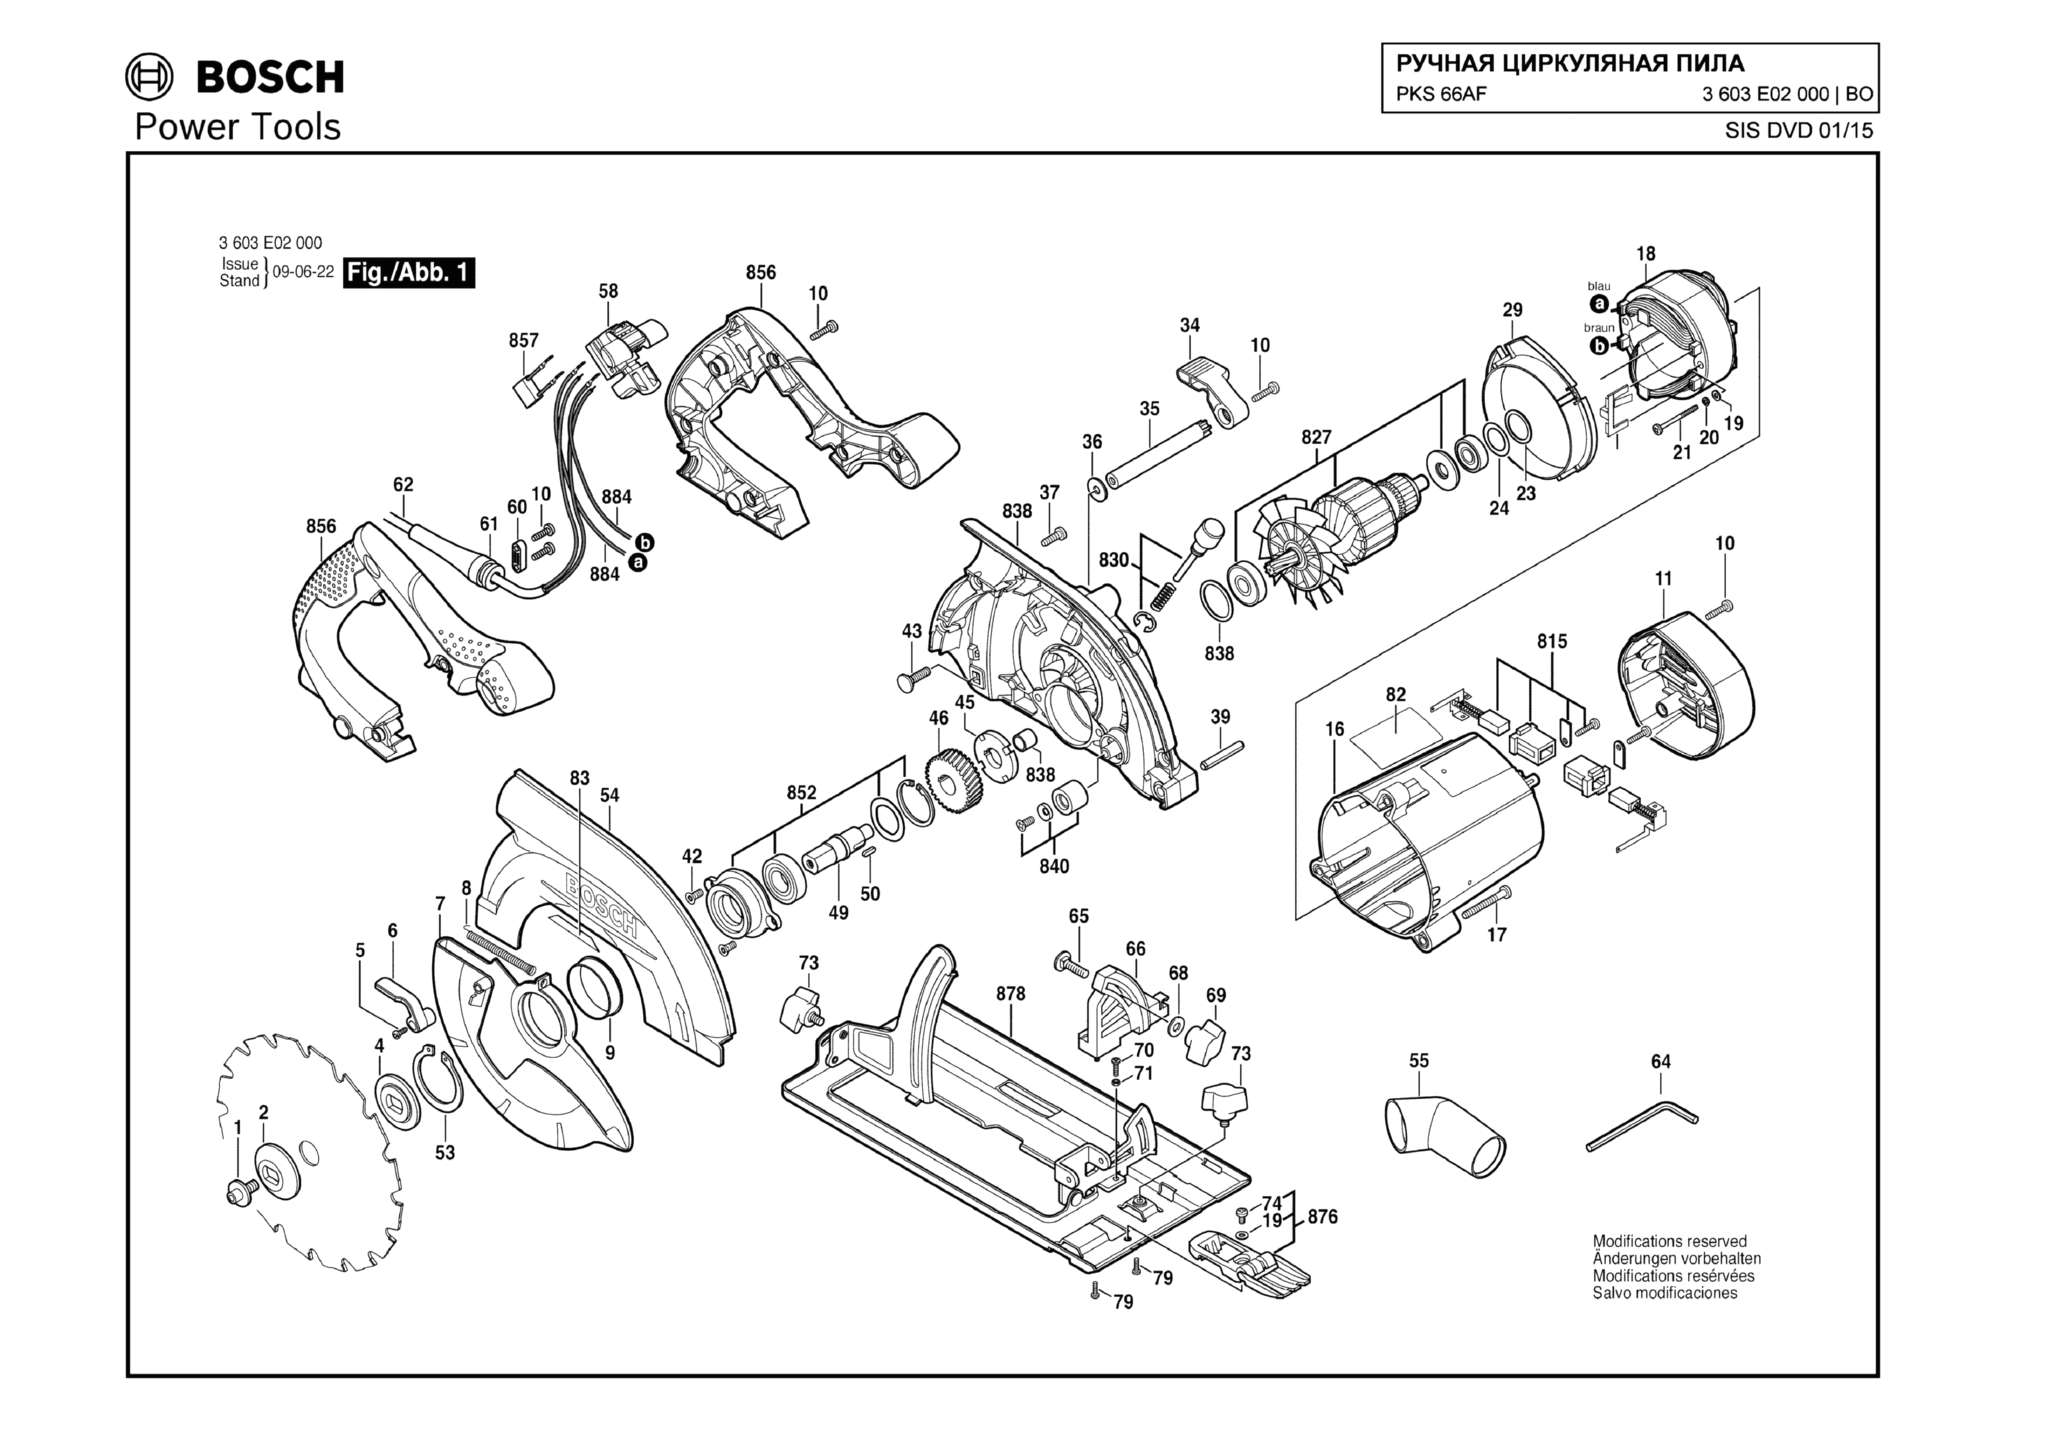 Запчасти, схема и деталировка Bosch PKS 66AF (ТИП 3603E02000)